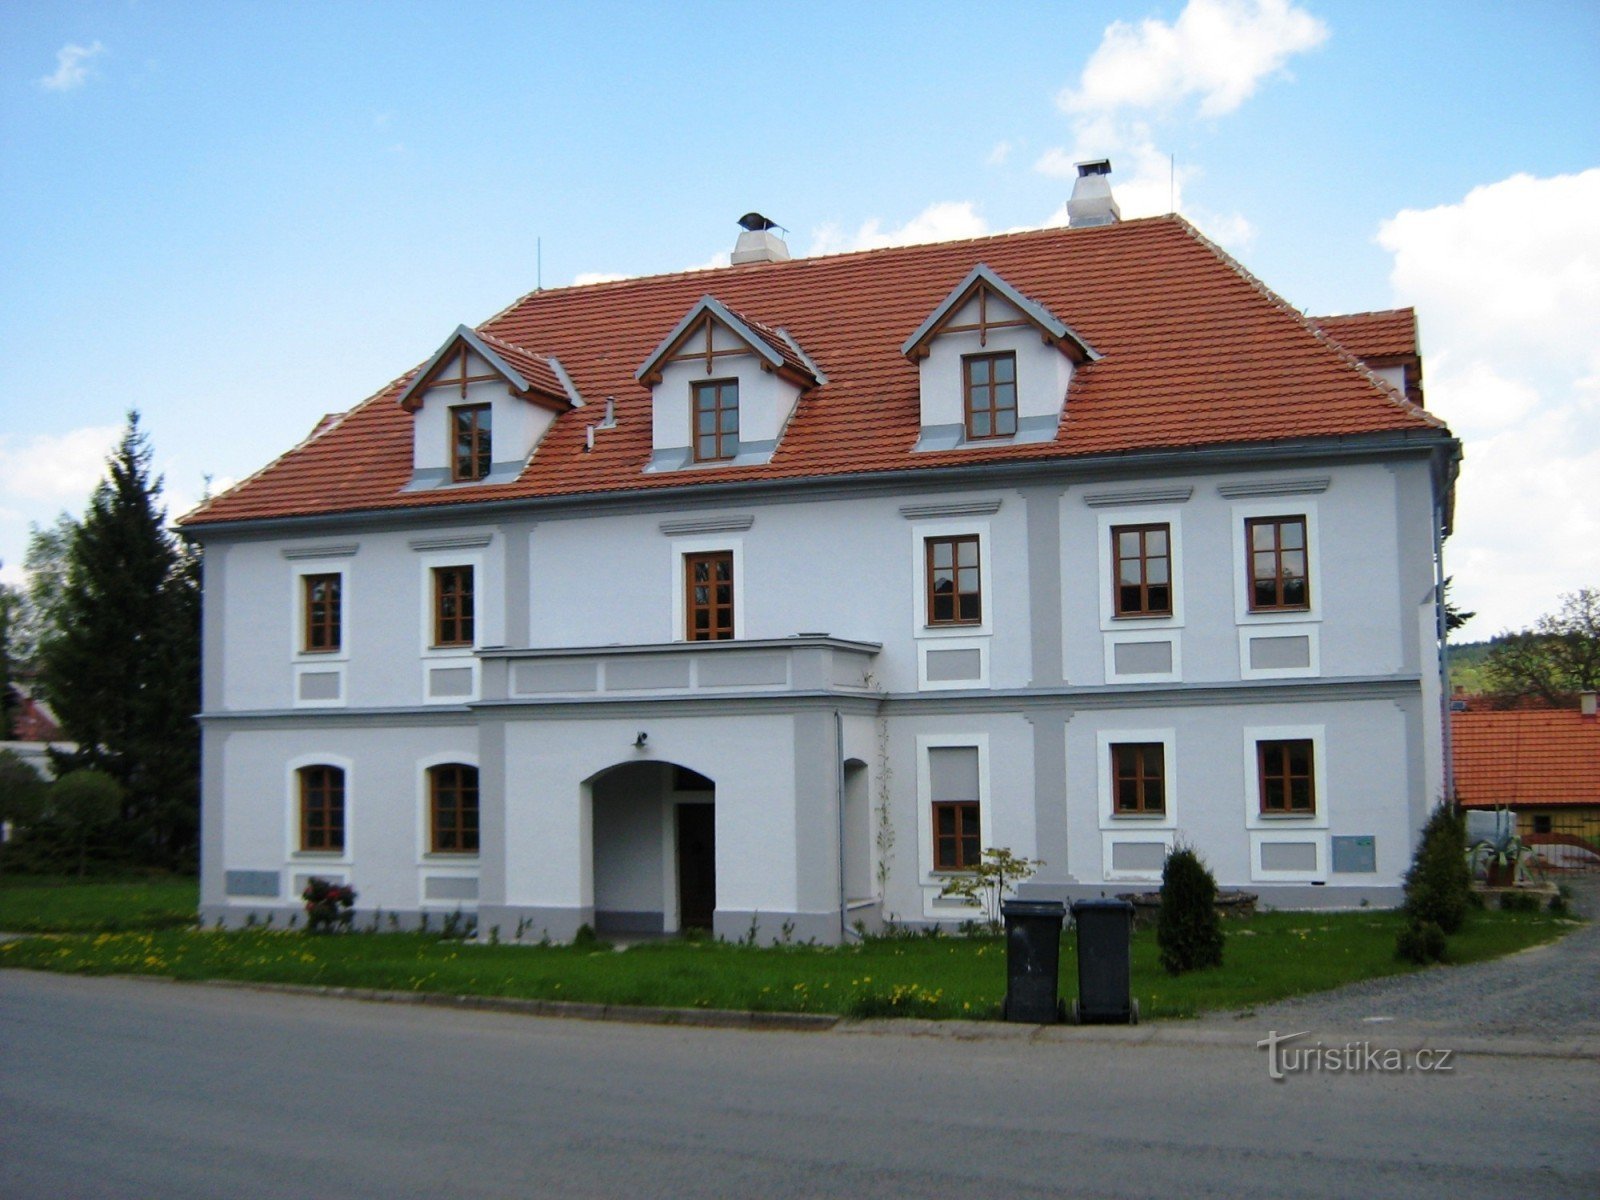 Σπίτι σπα στο χωριό κοντά στο Volfů